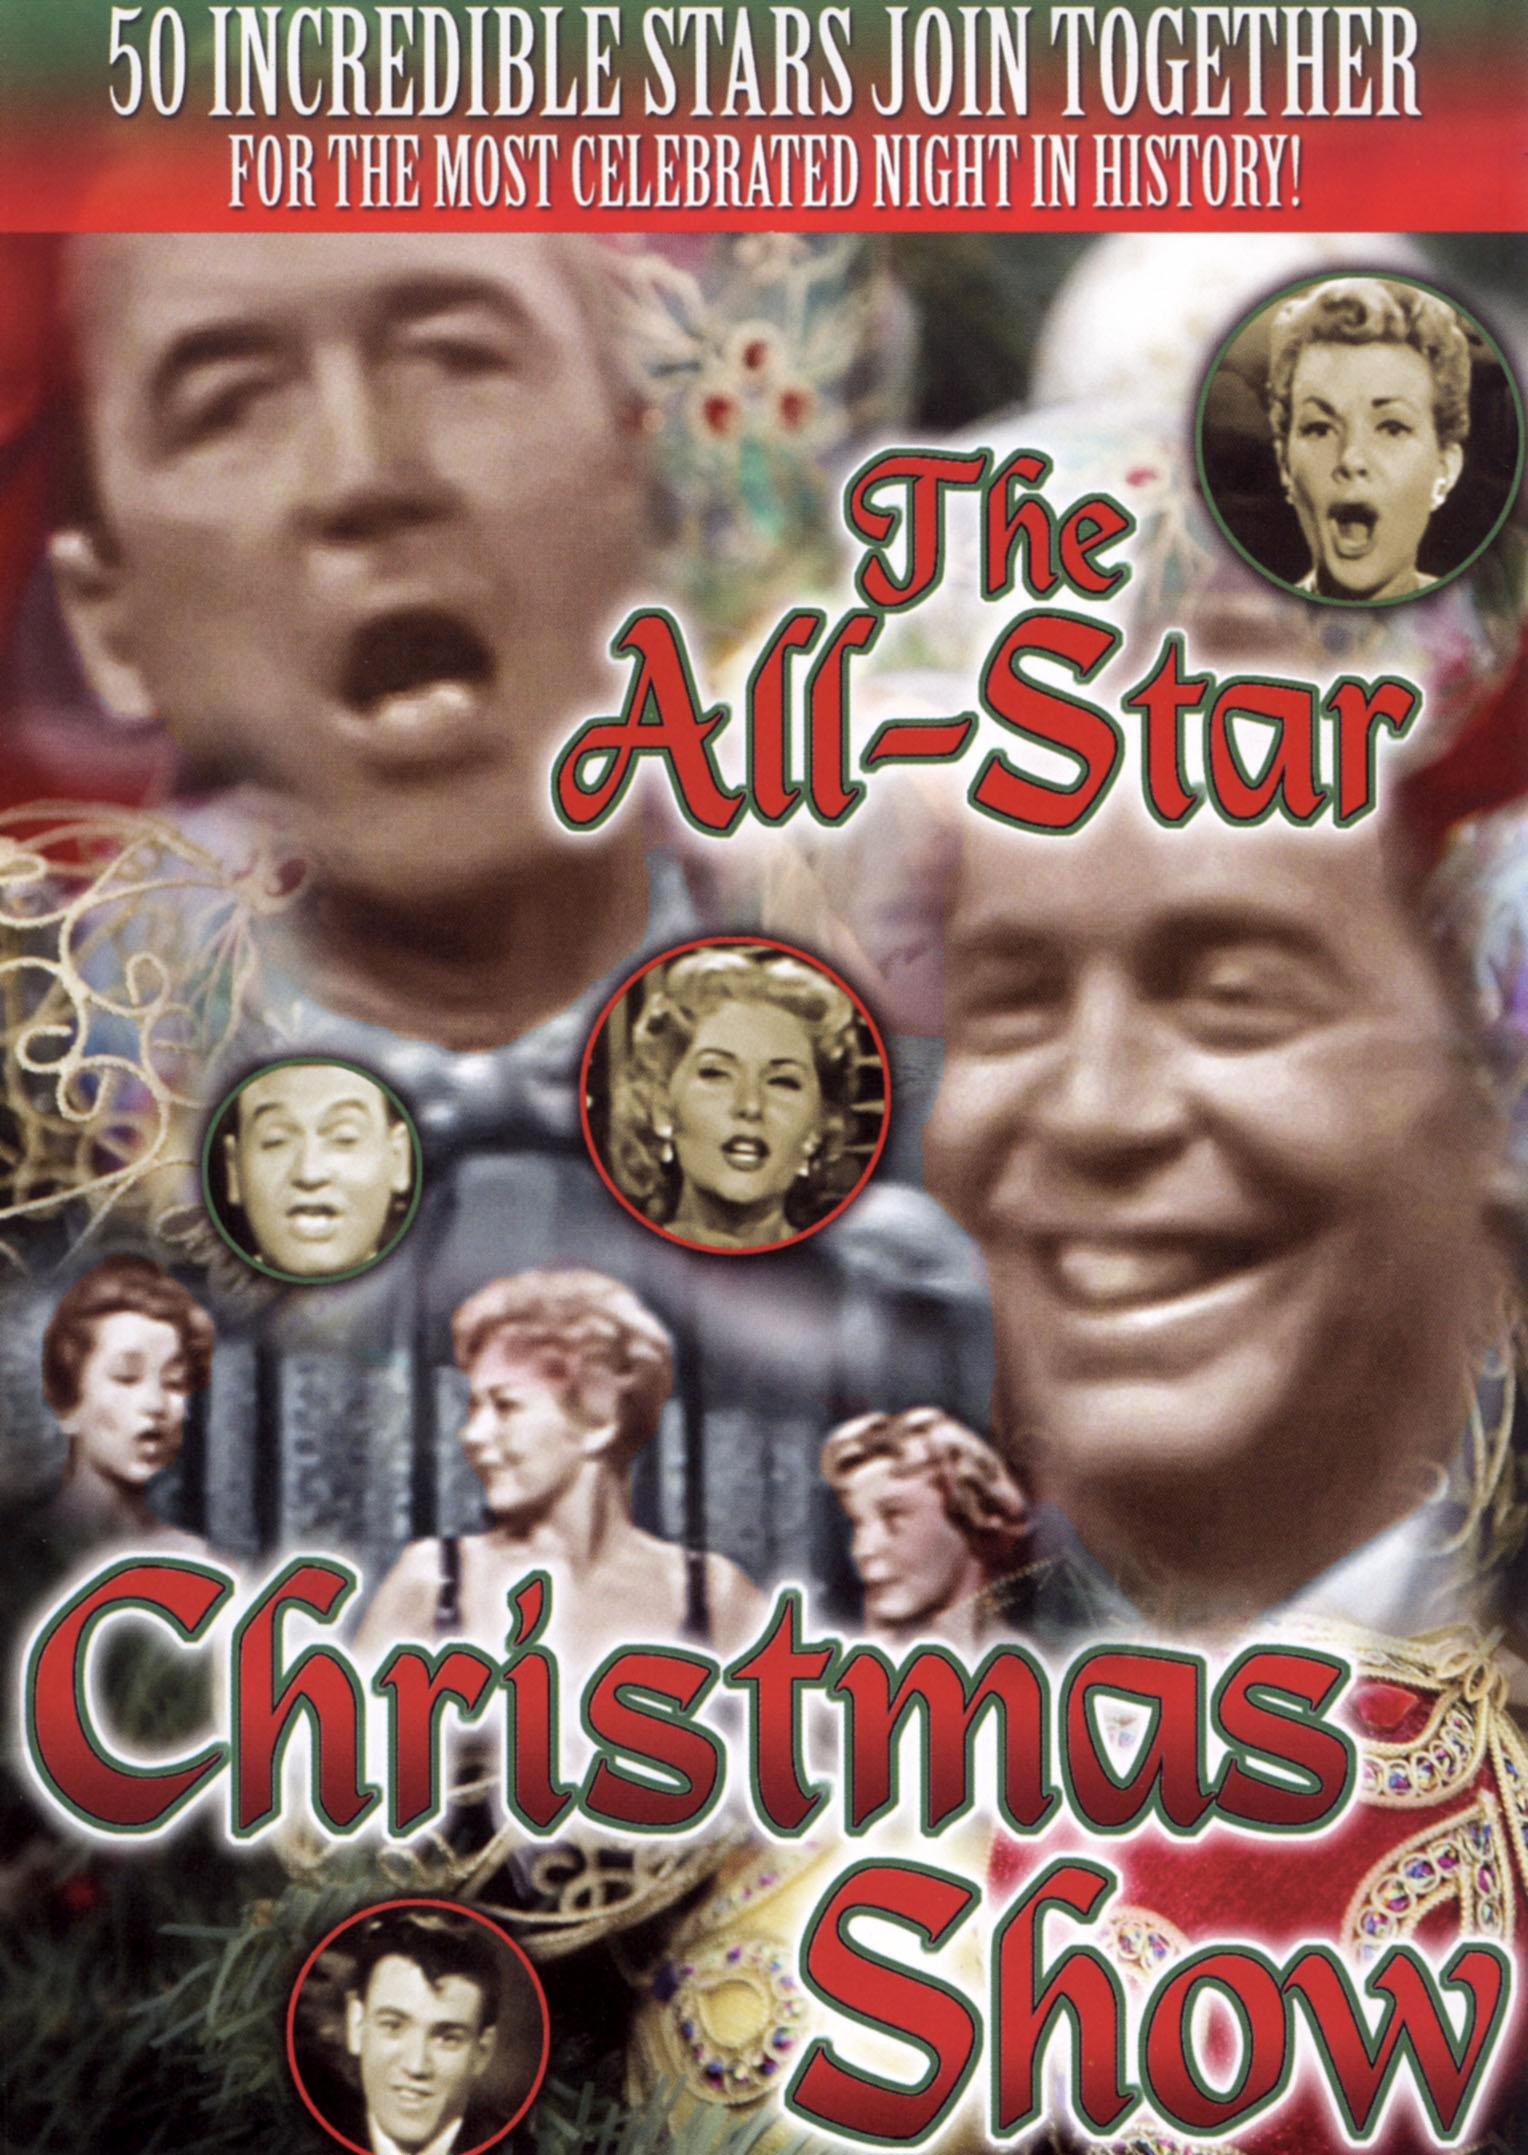 The AllStar Christmas Show [DVD] [1958] Best Buy